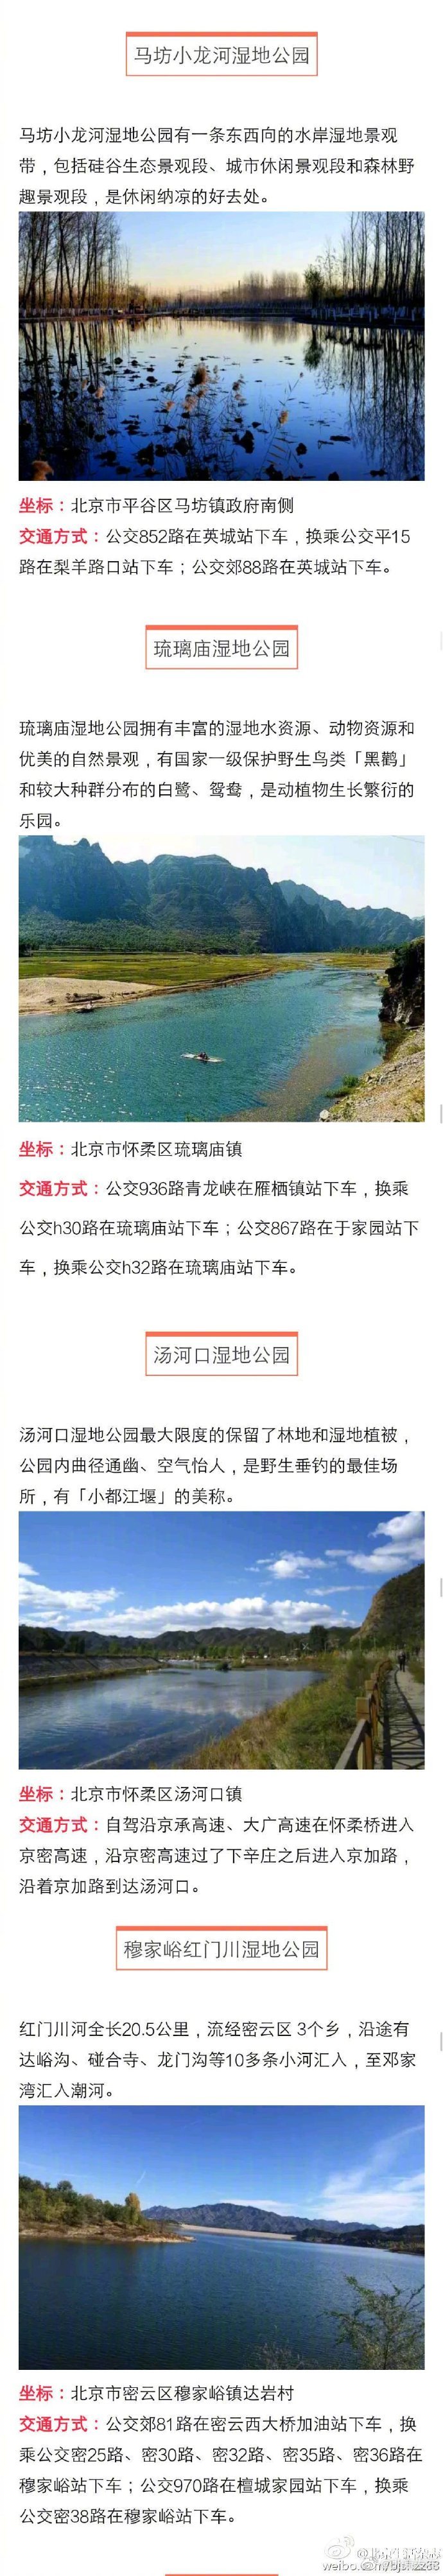 北京35处湿地美景推荐 暑假避暑好去处[墙根网]